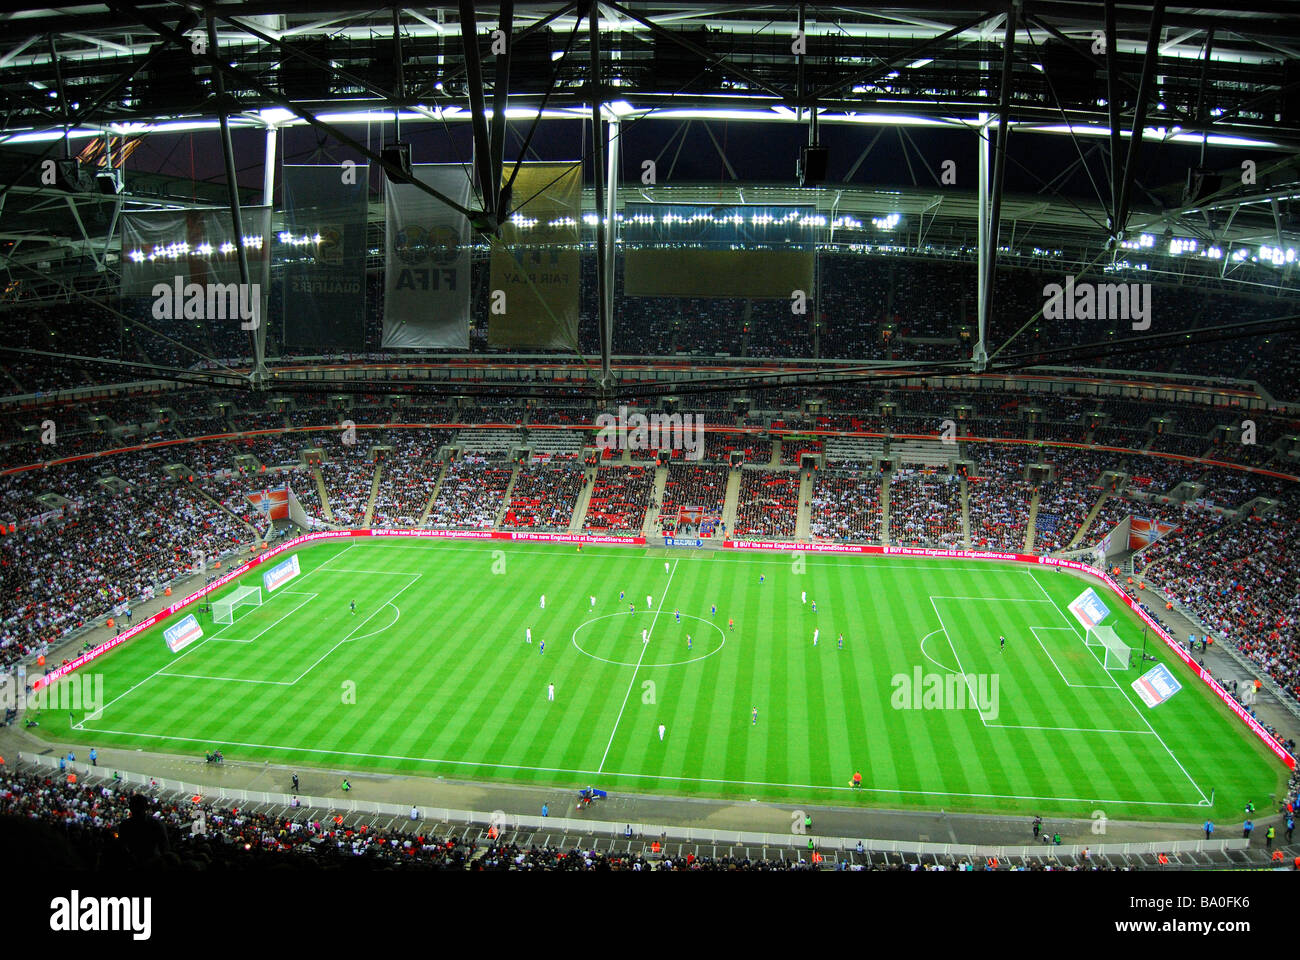 England spielt im Wembley Fußballstadion bei Nacht, Wembley, London, England, Vereinigtes Königreich Stockfoto